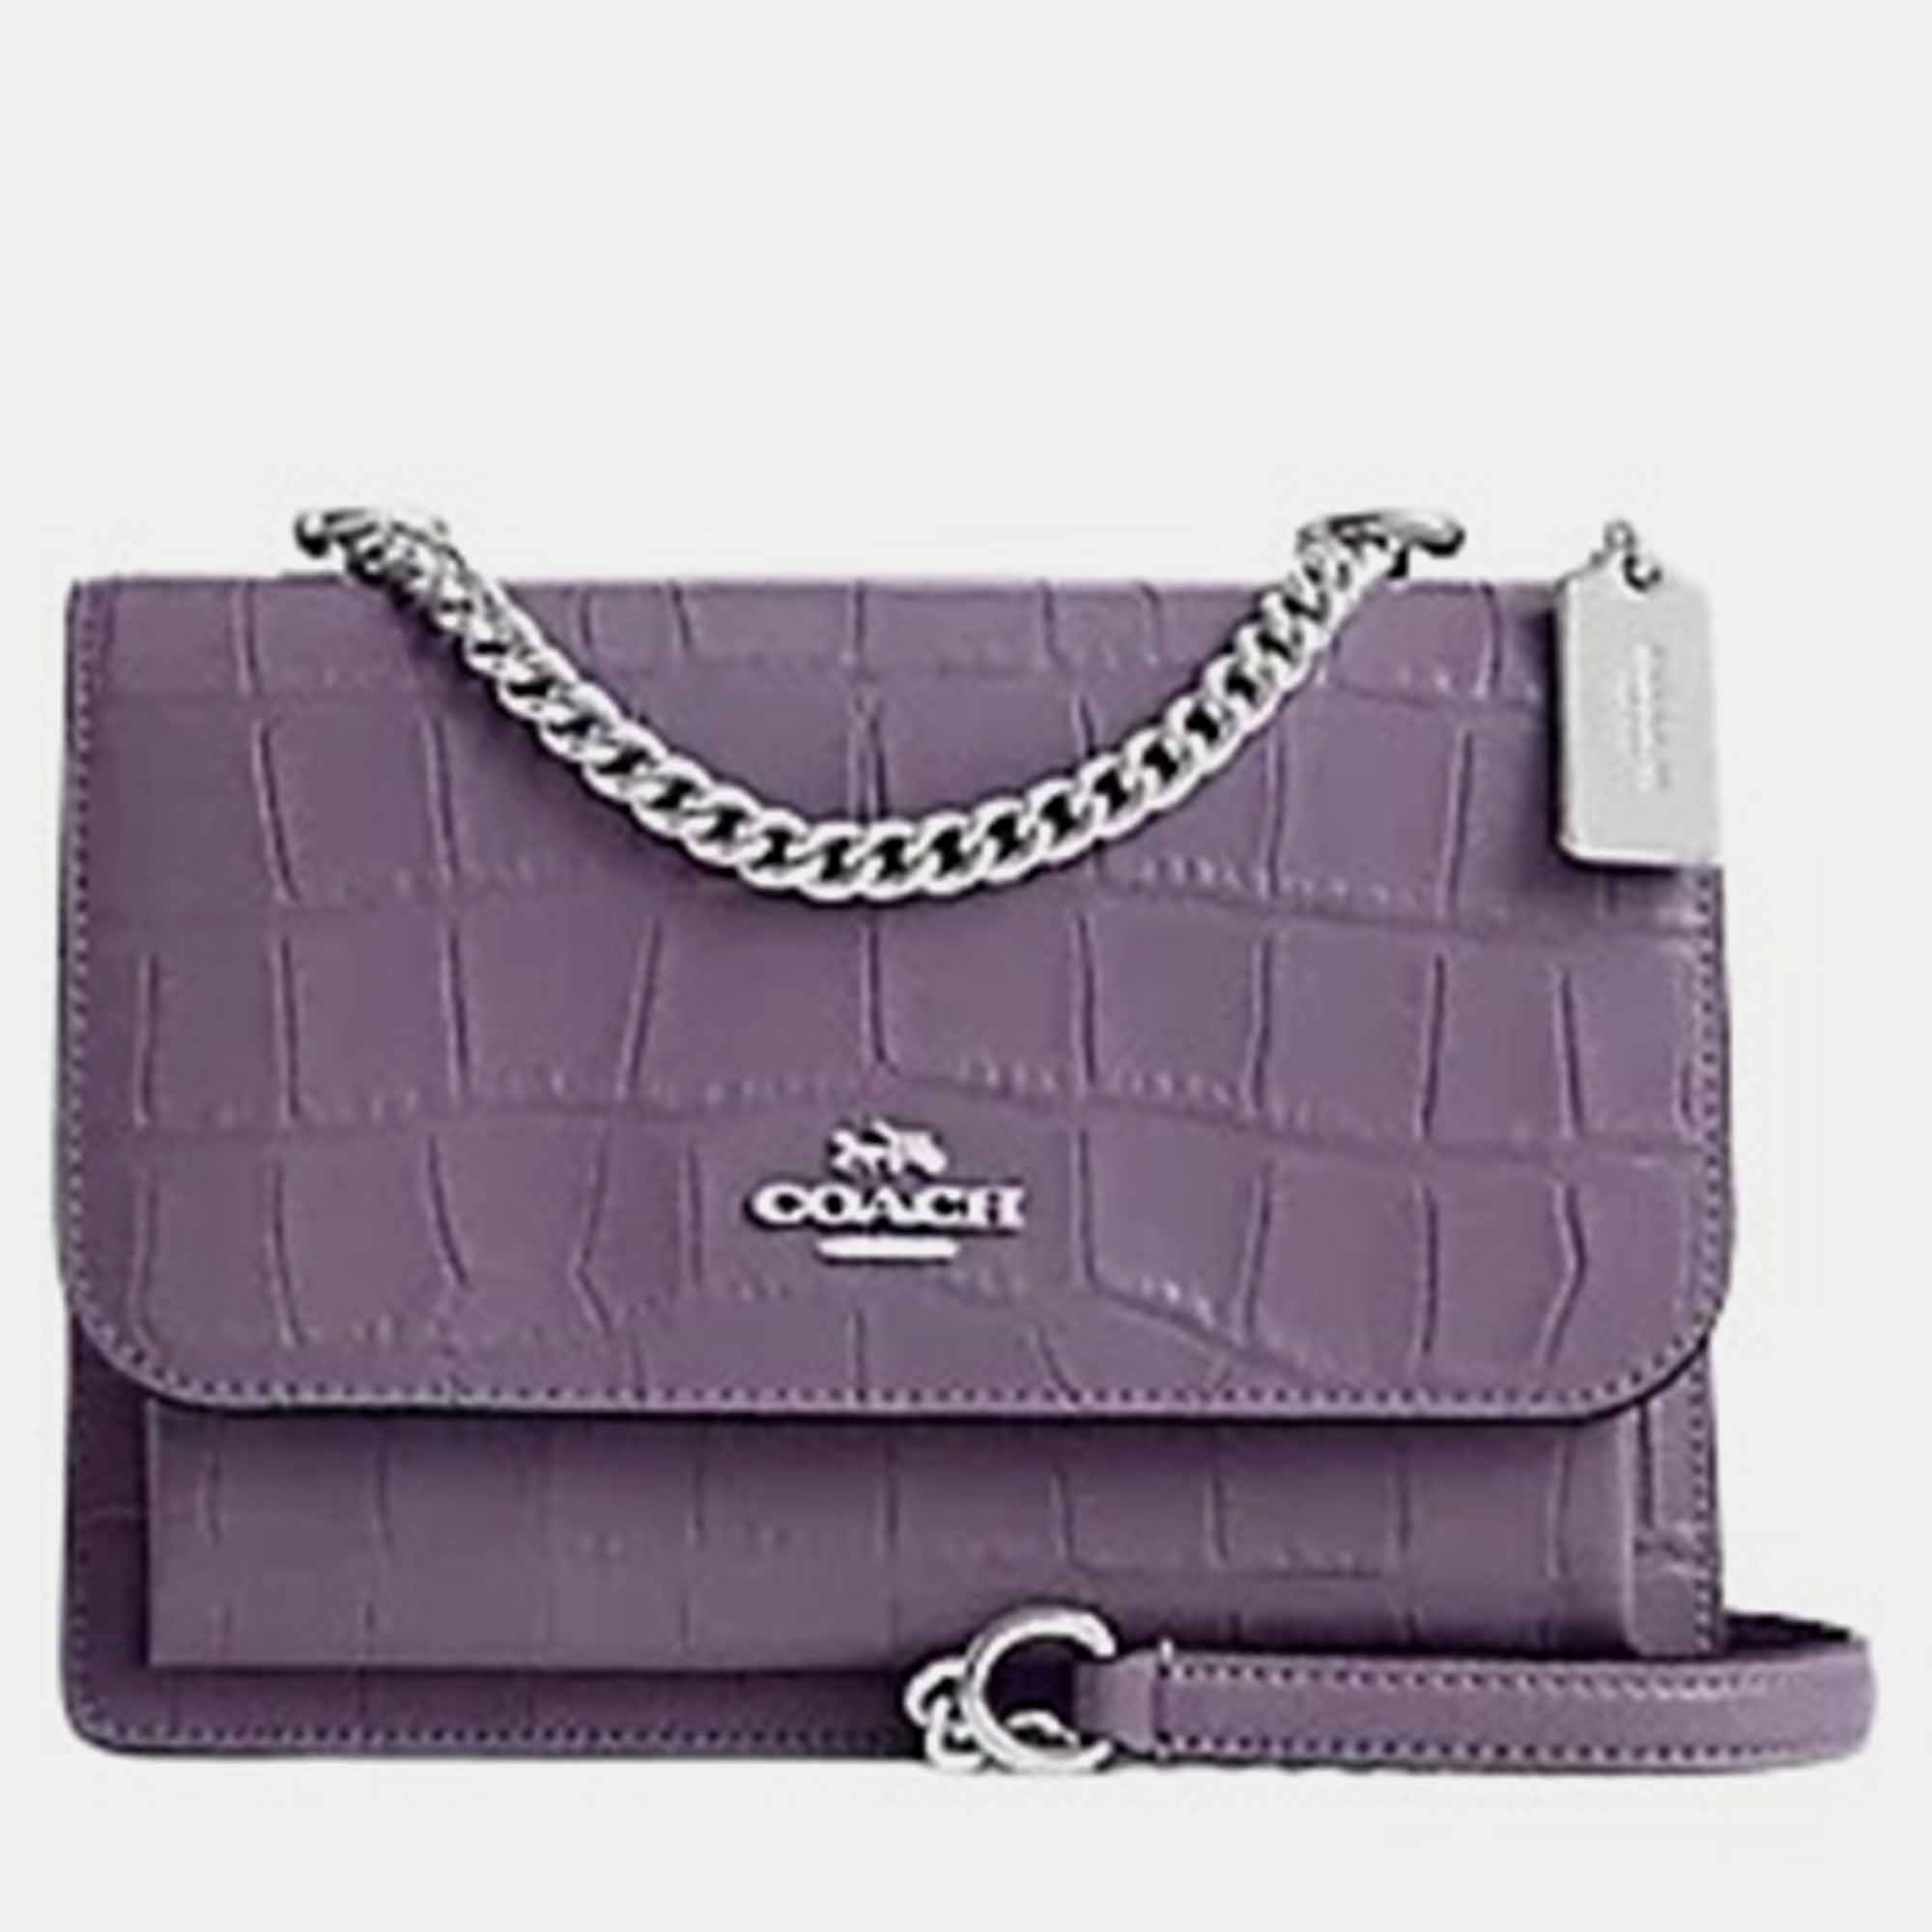 Coach LUNA SHOULDER BAG - Handbag - light violet/lilac - Zalando.de